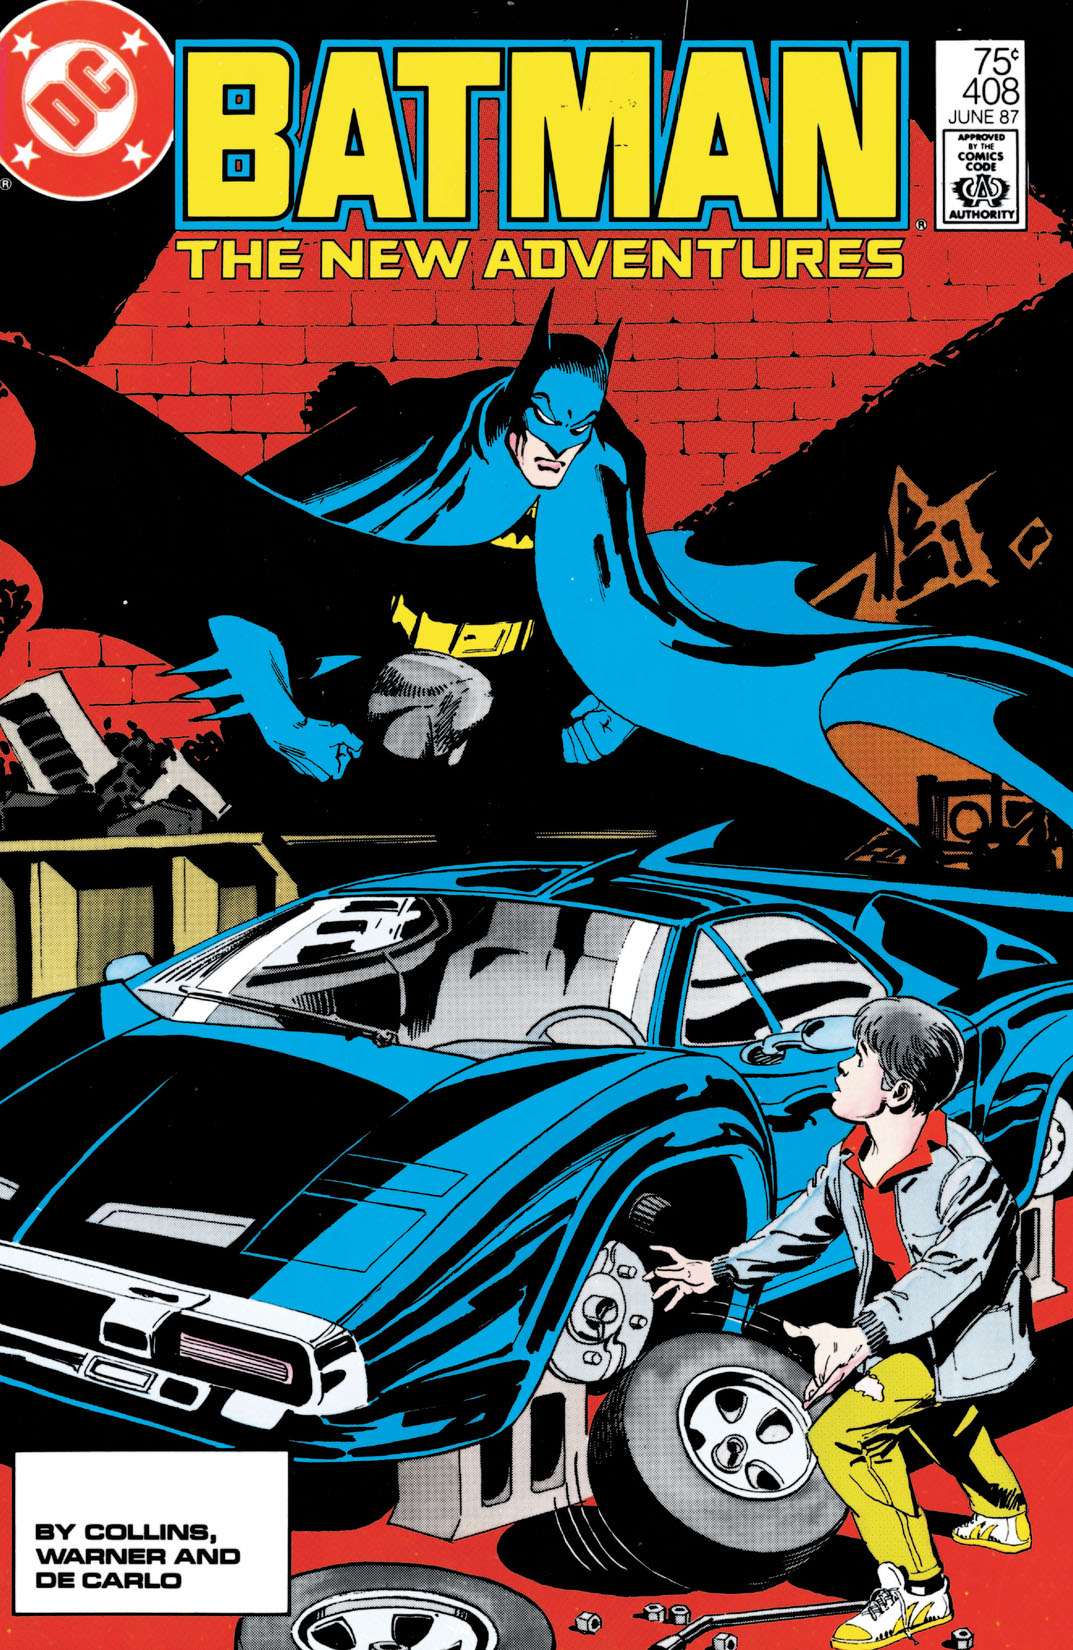 Batman (1940-) #408 preview images